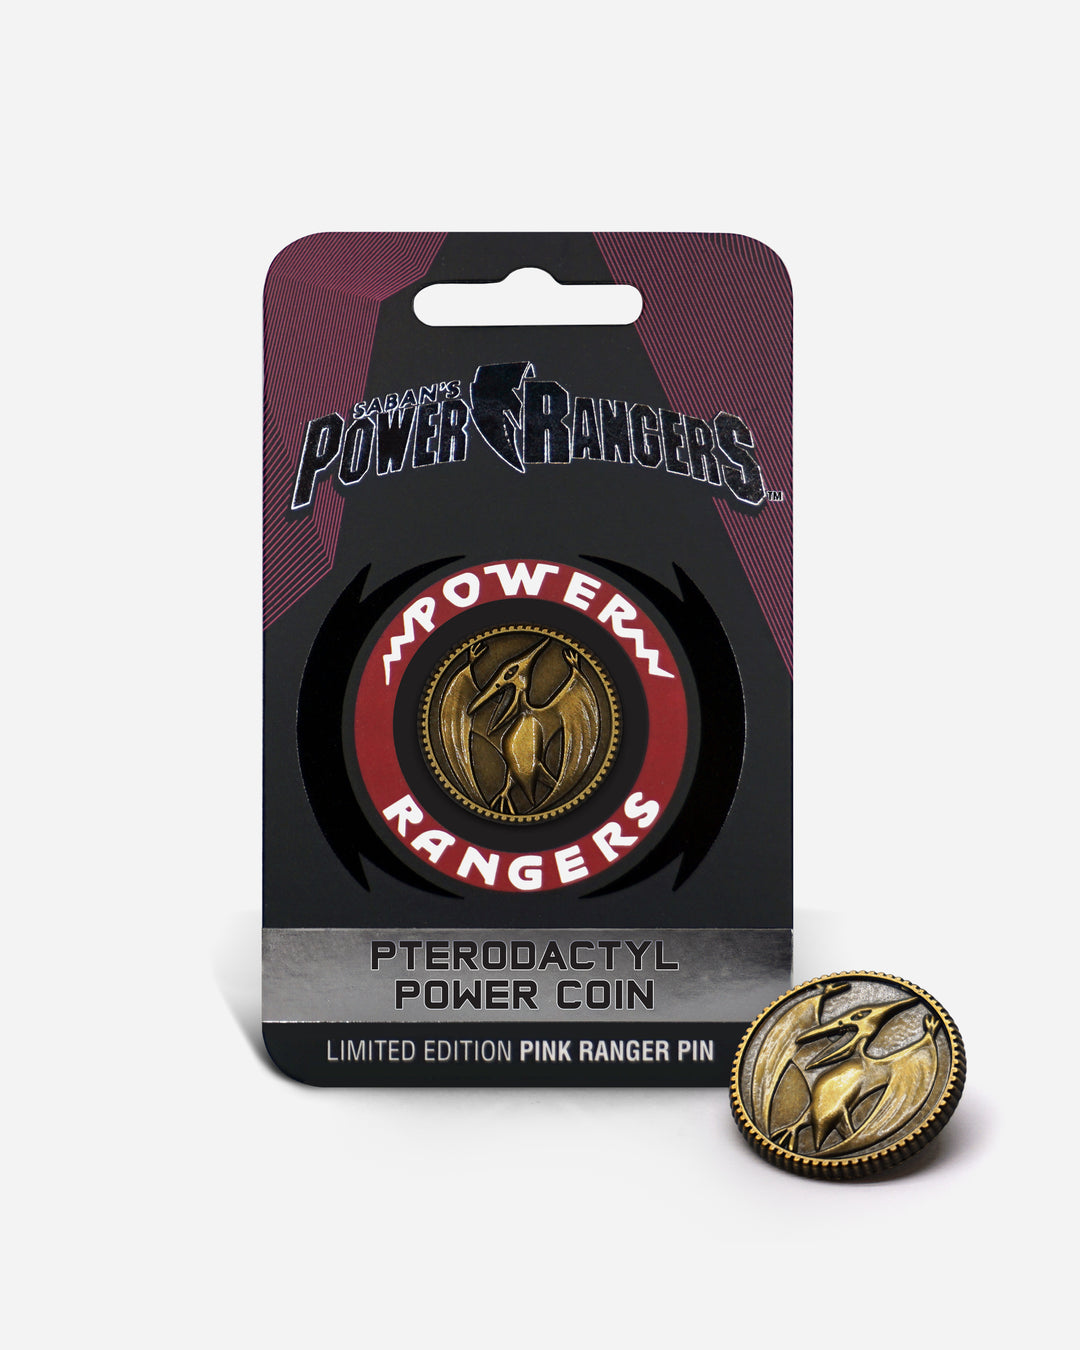 Pterodactyl Power Coin Pin